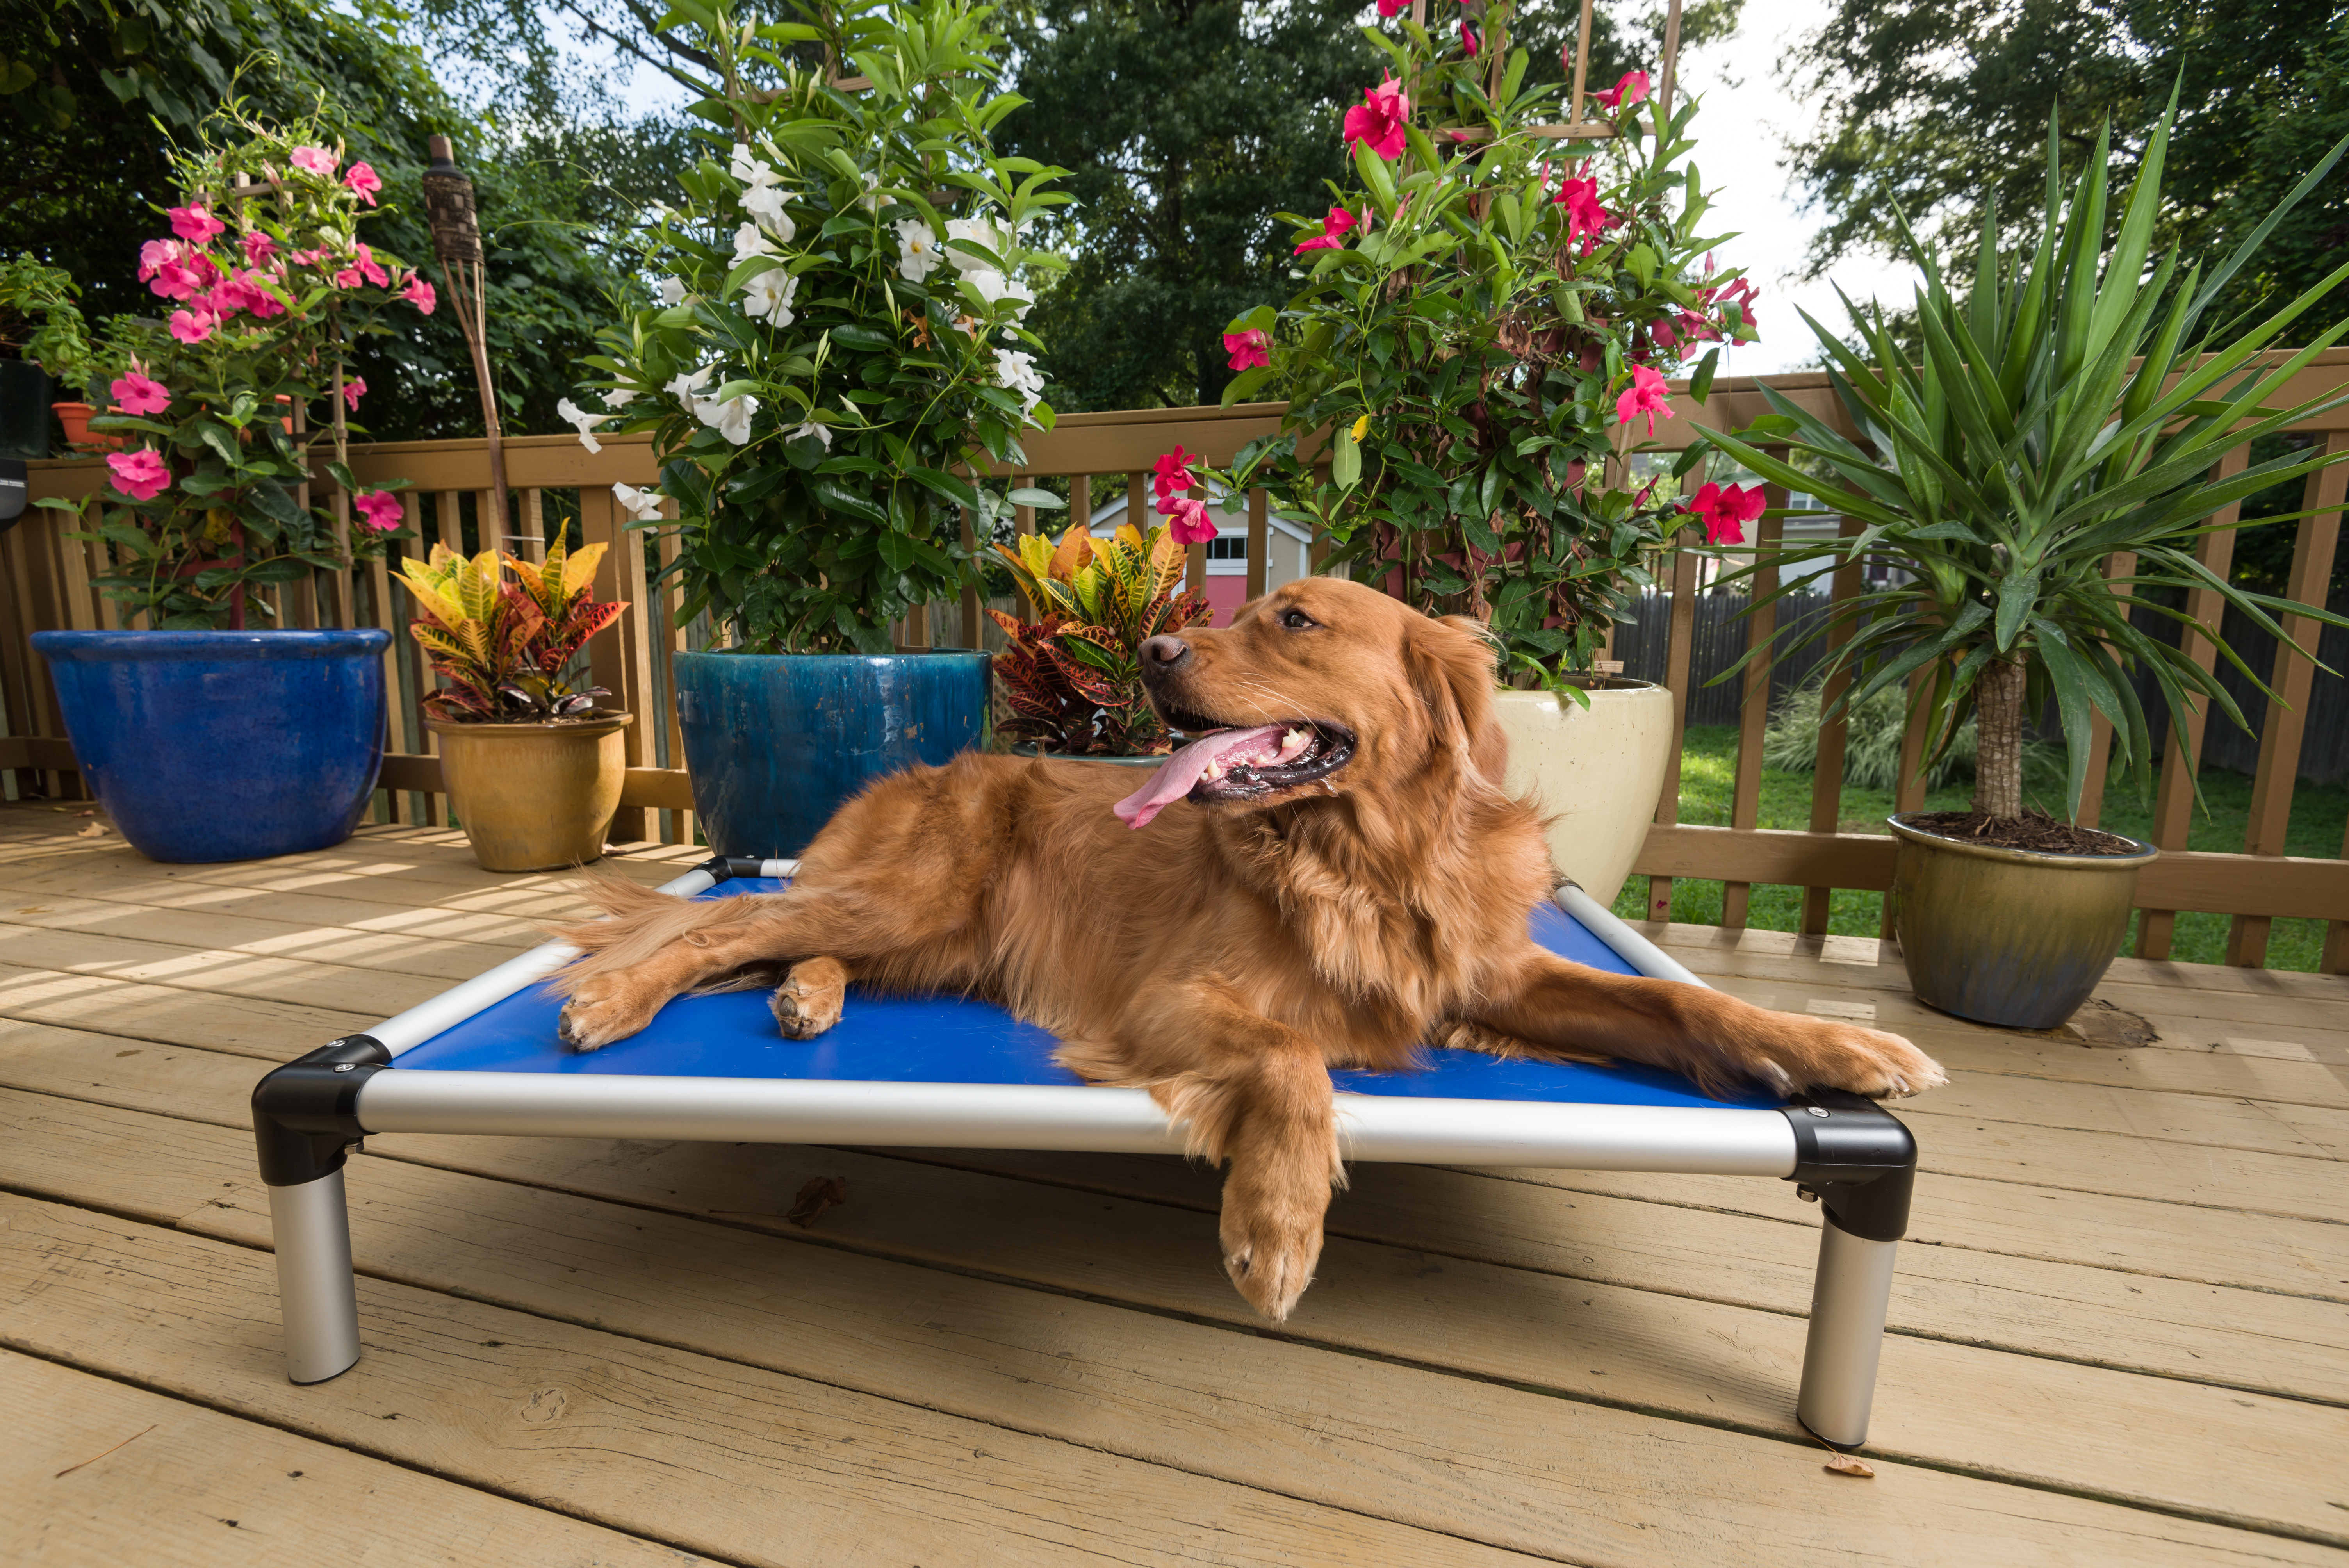 Outdoor Dog Beds  Kuranda Dog Beds®